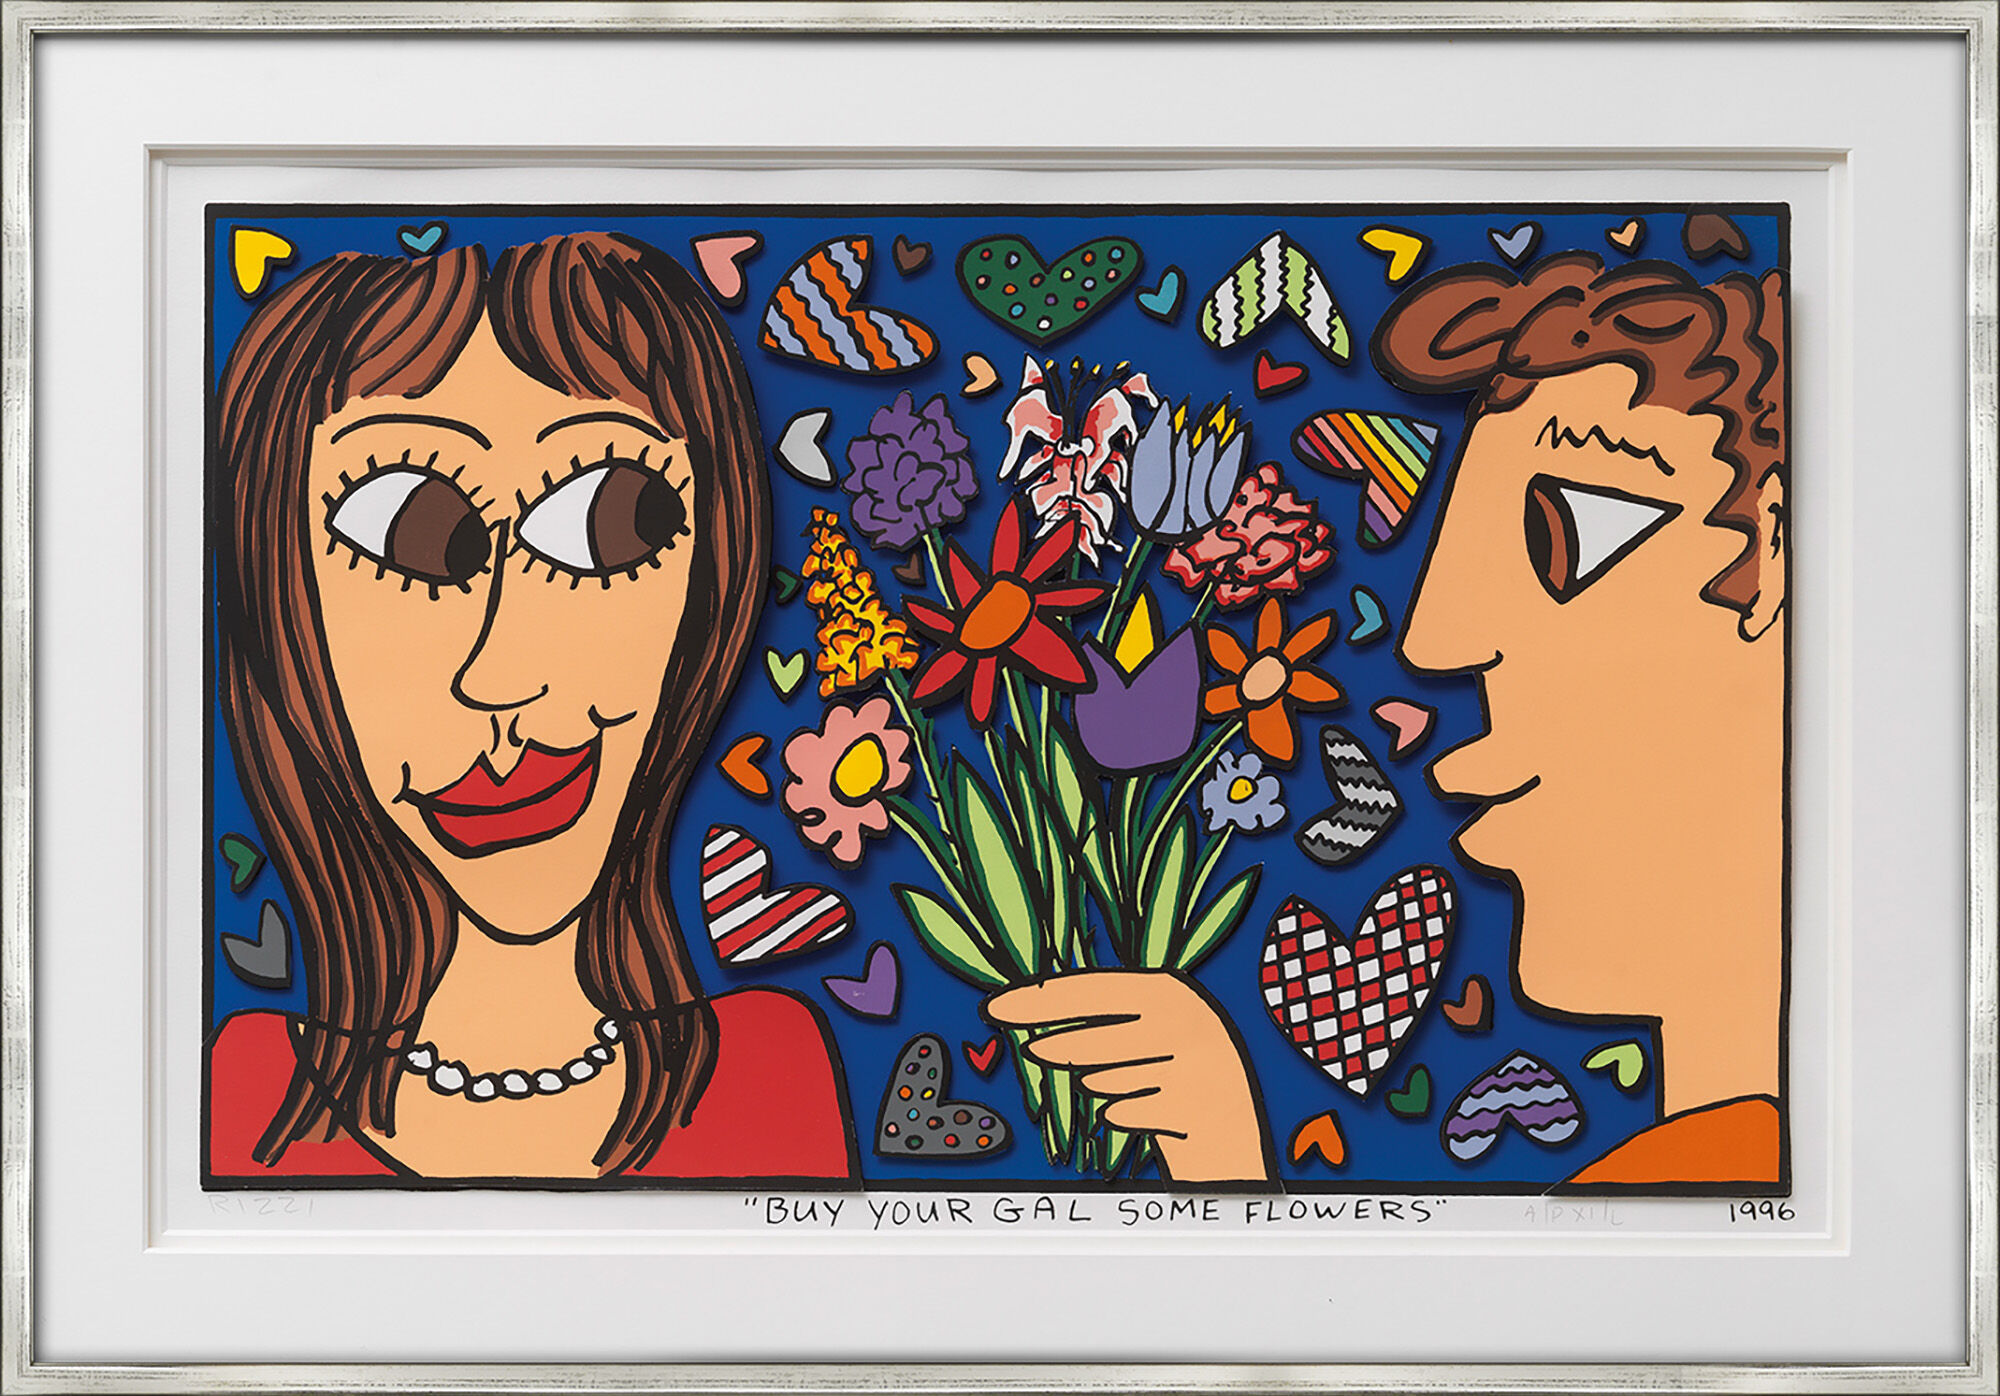 Bild "Buy your Gal some Flowers" (1996) von James Rizzi